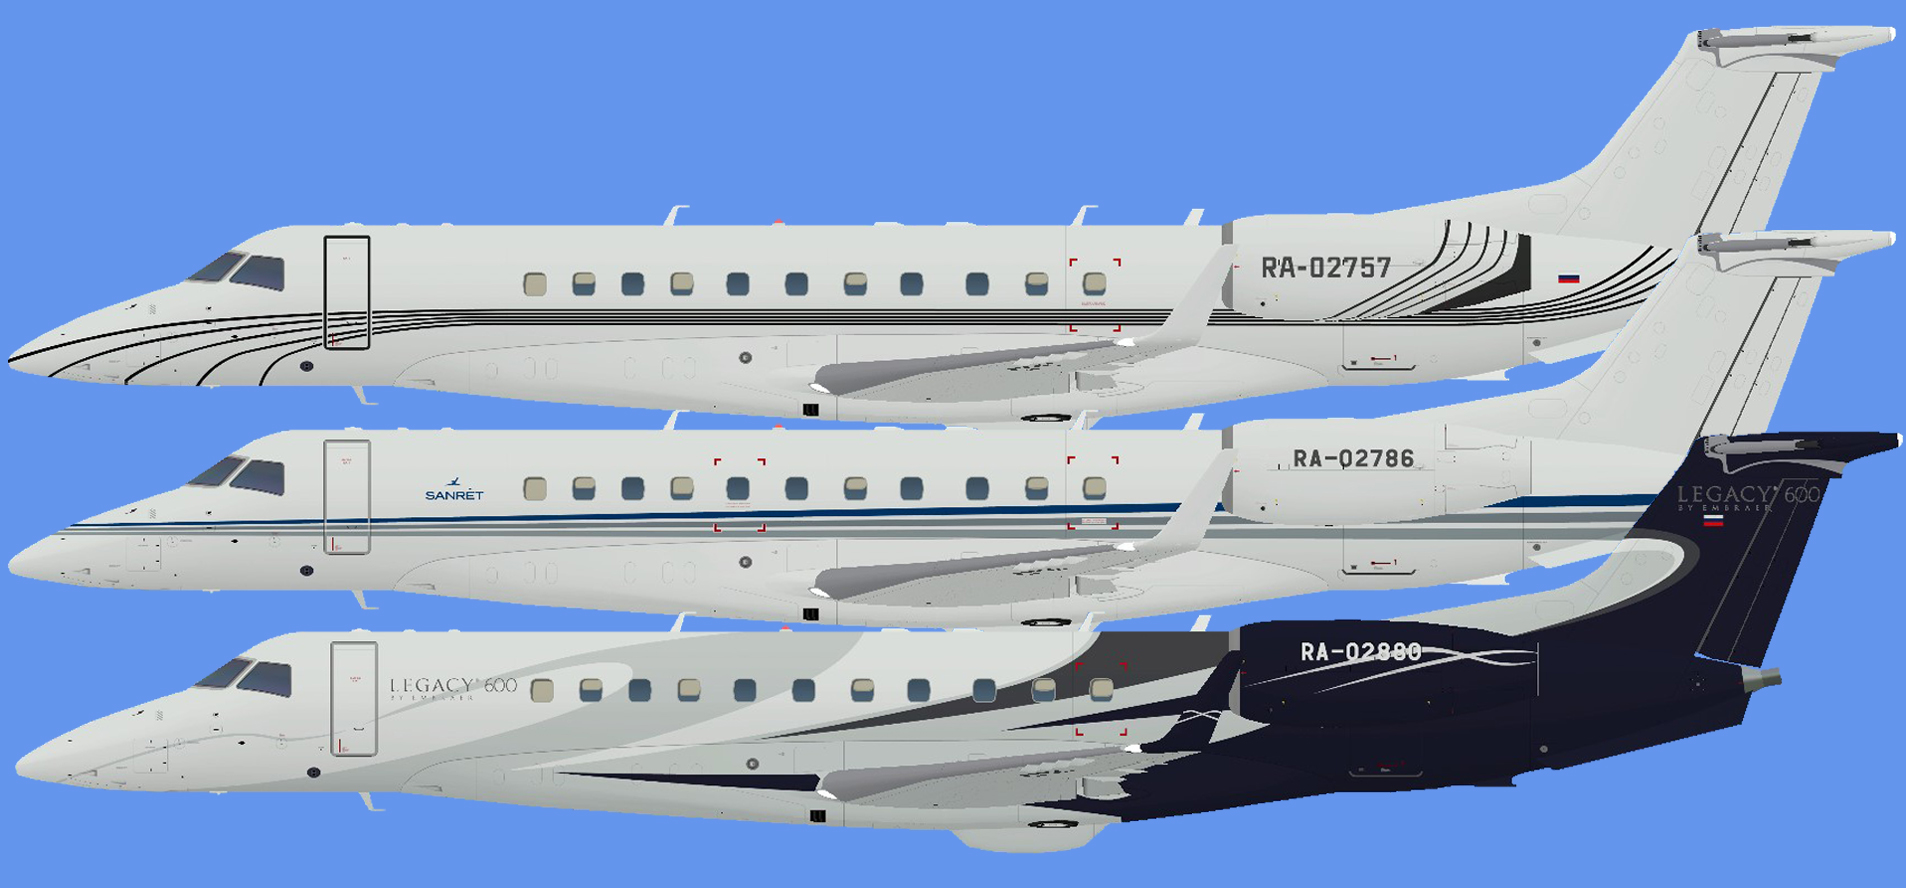 Embraer Legacy 600 Sanret